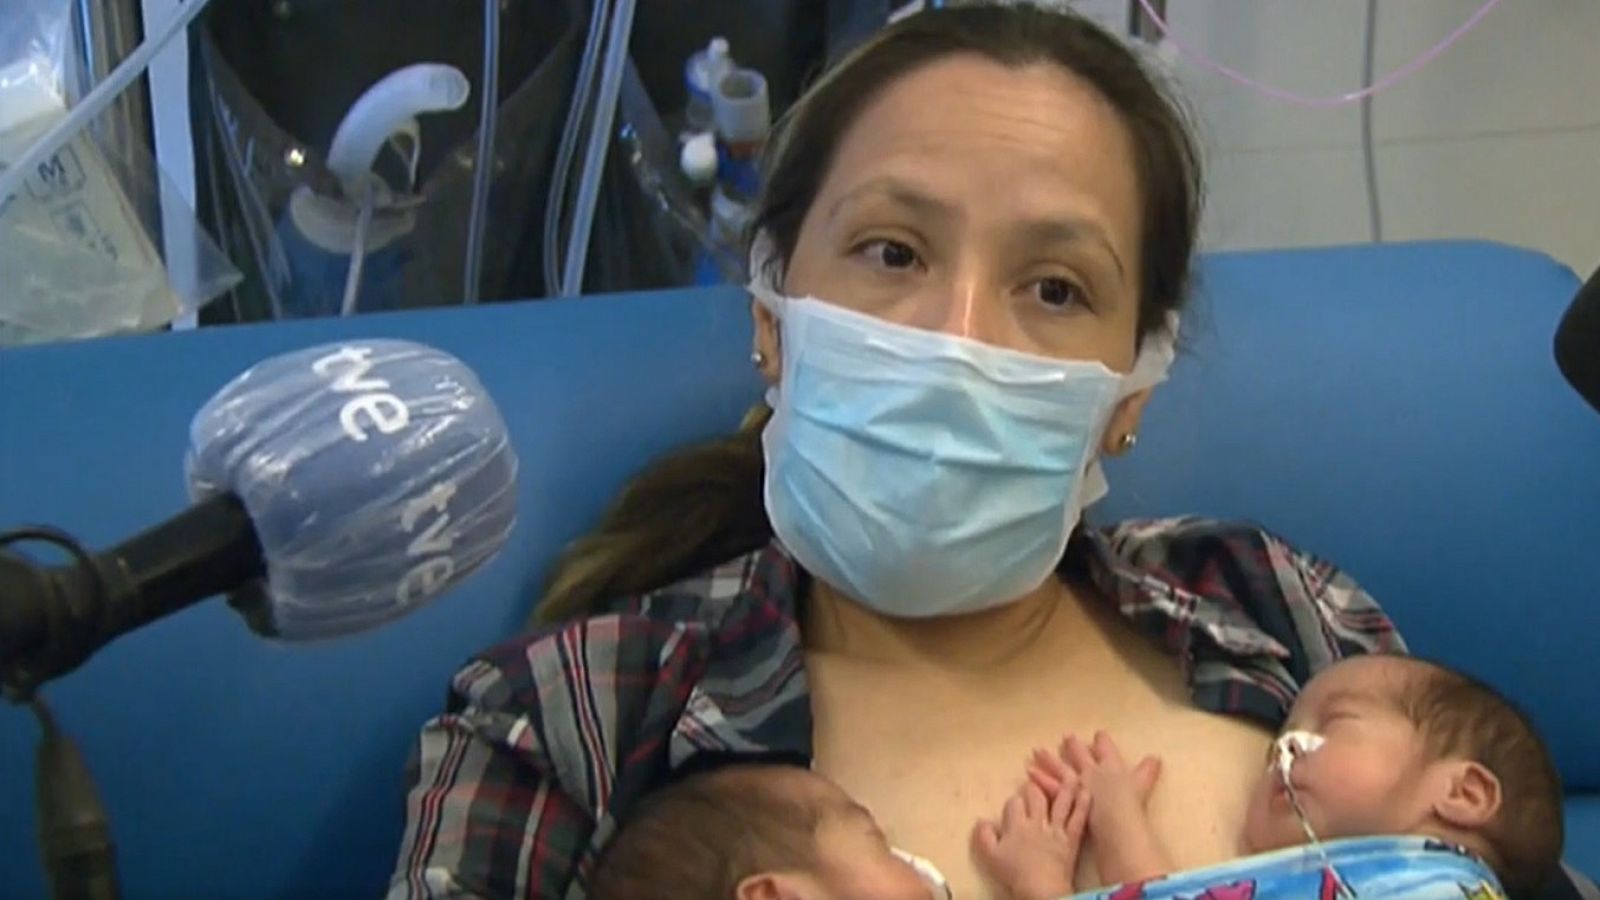 Coronavirus | Una mujer ingresada con coronavirus en la UCI da a luz: "No recordaba que estaba embarazada" - RTVE.es